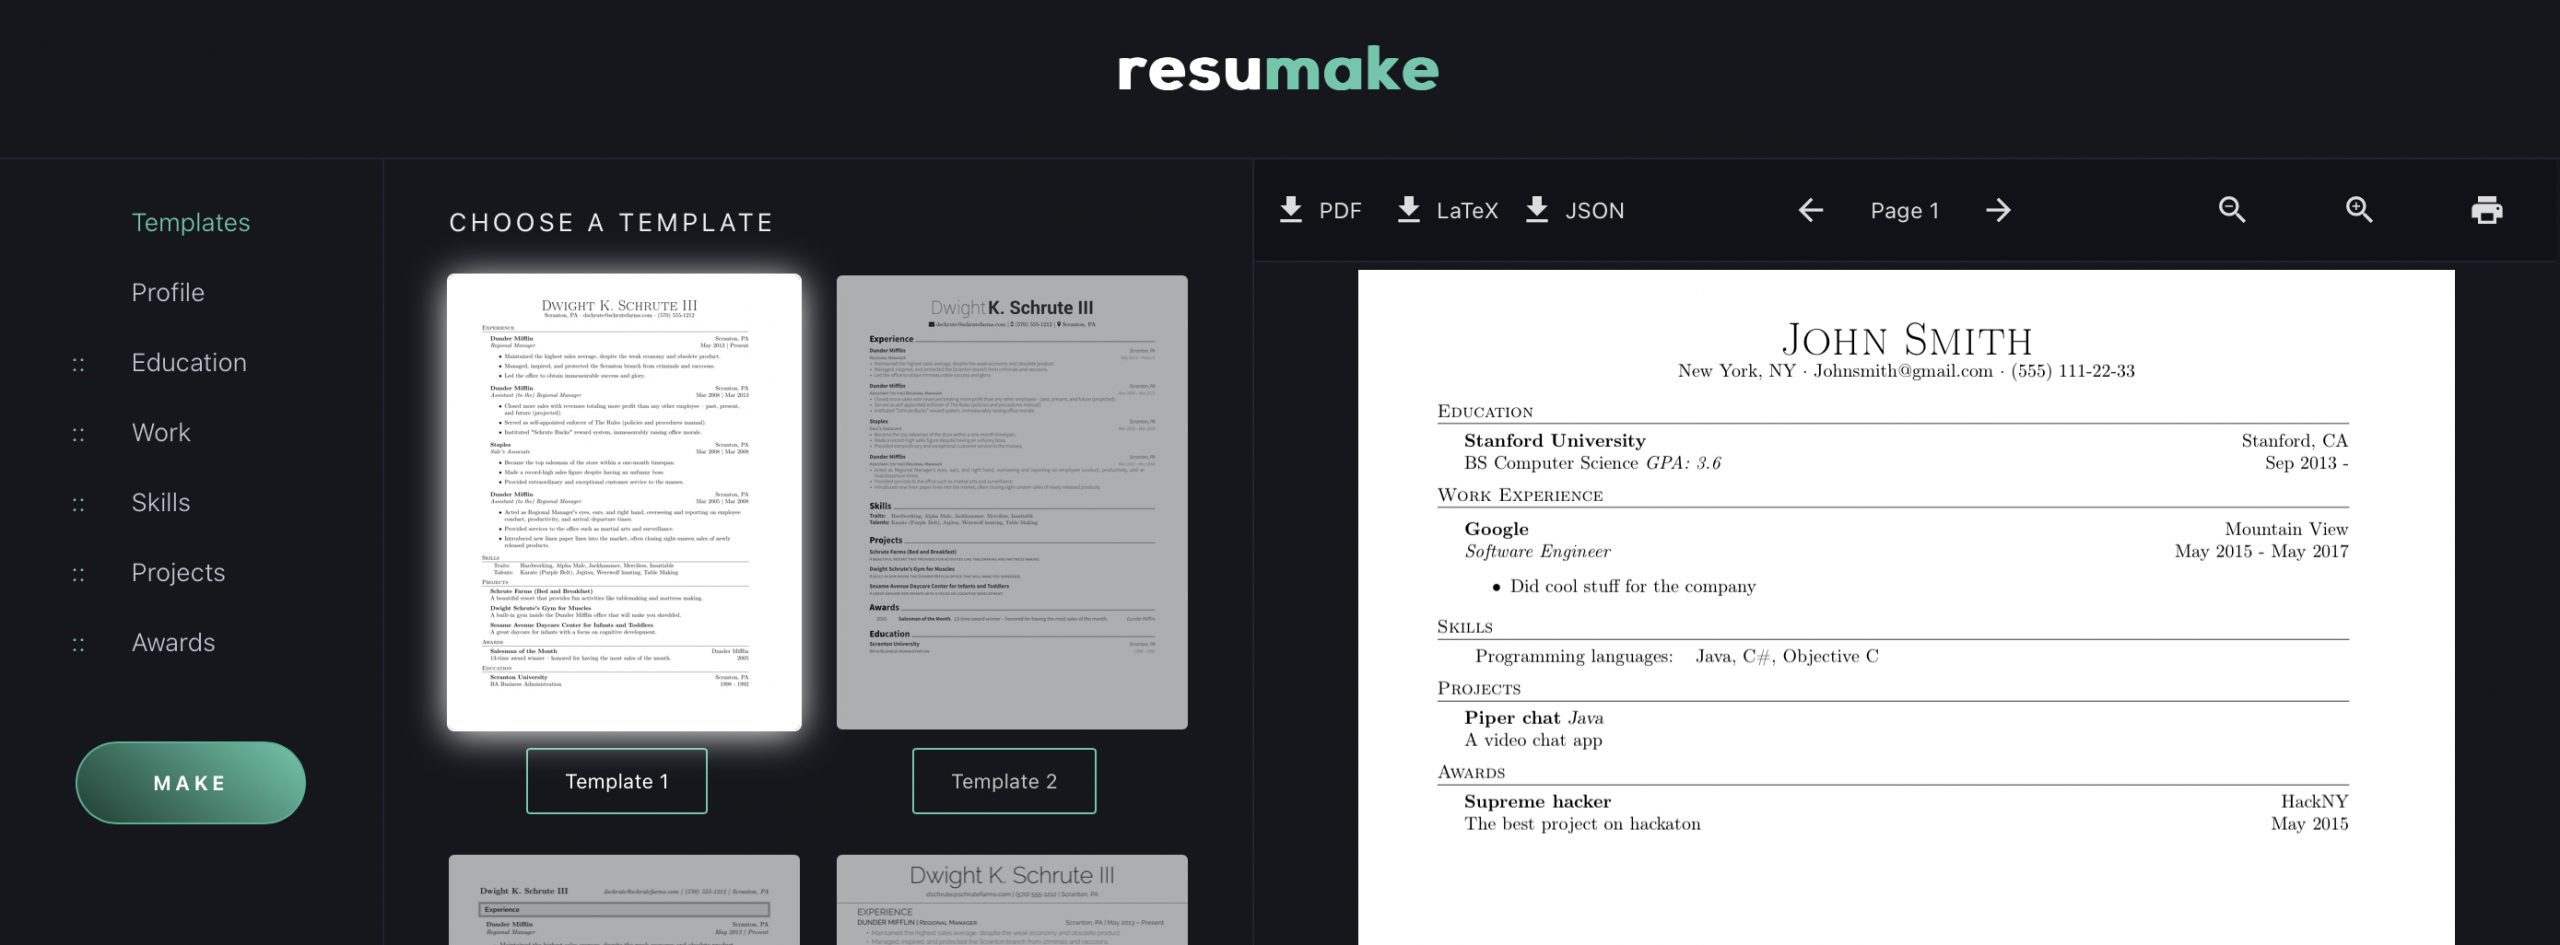 Resumake for creating resume